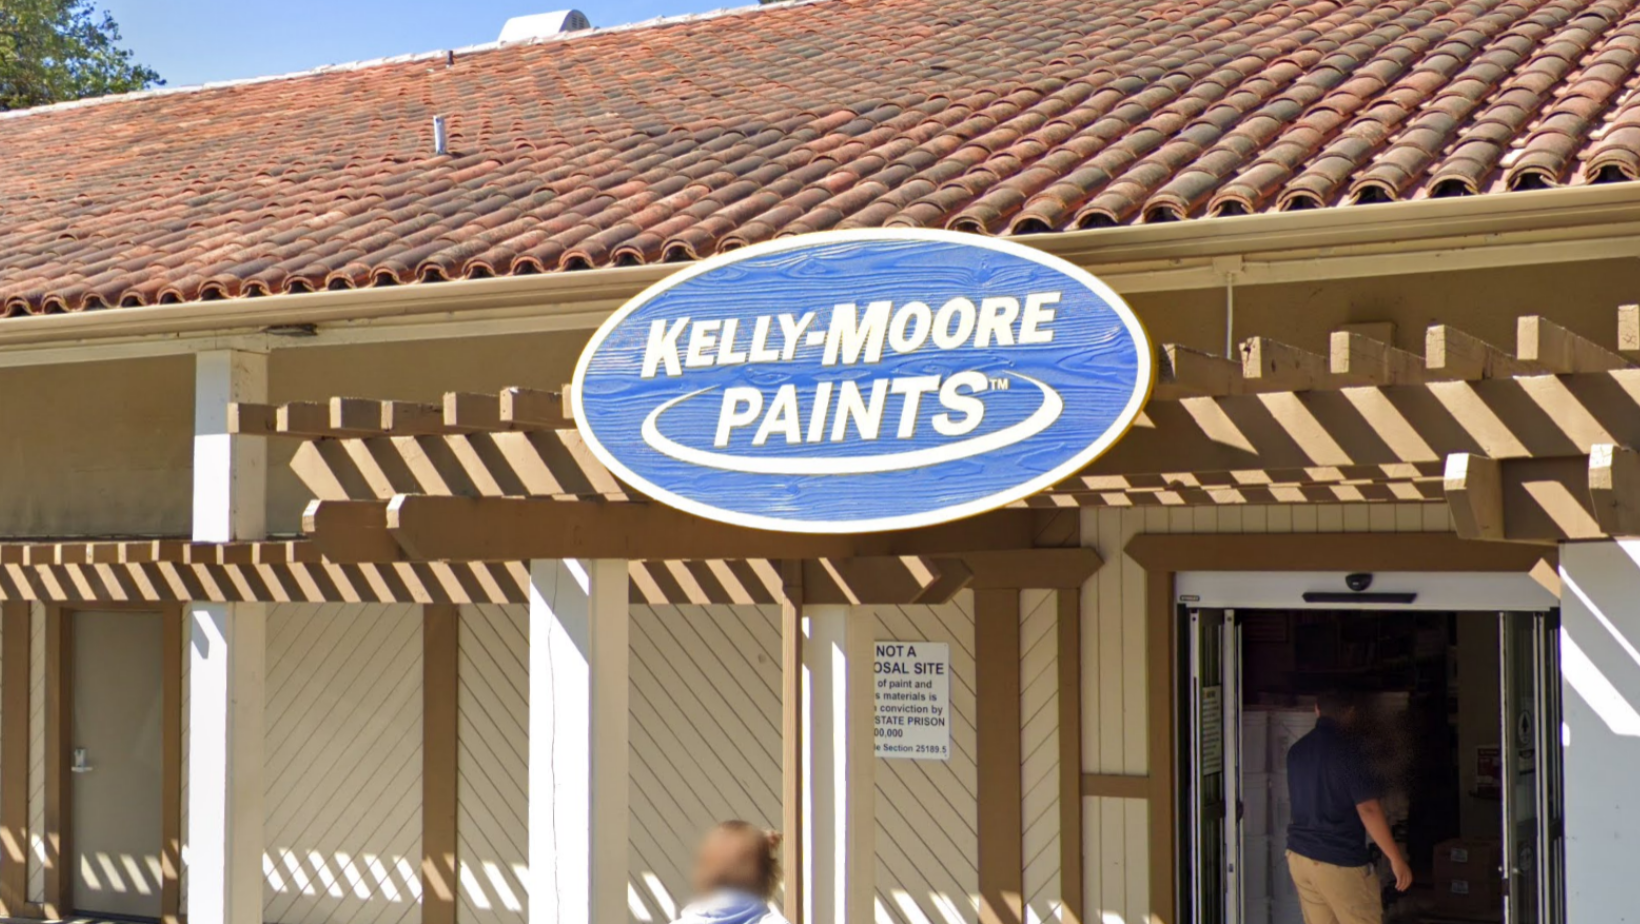 湾区的凯利-摩尔油漆公司将关闭，引述庞大的石棉诉讼和财务压力